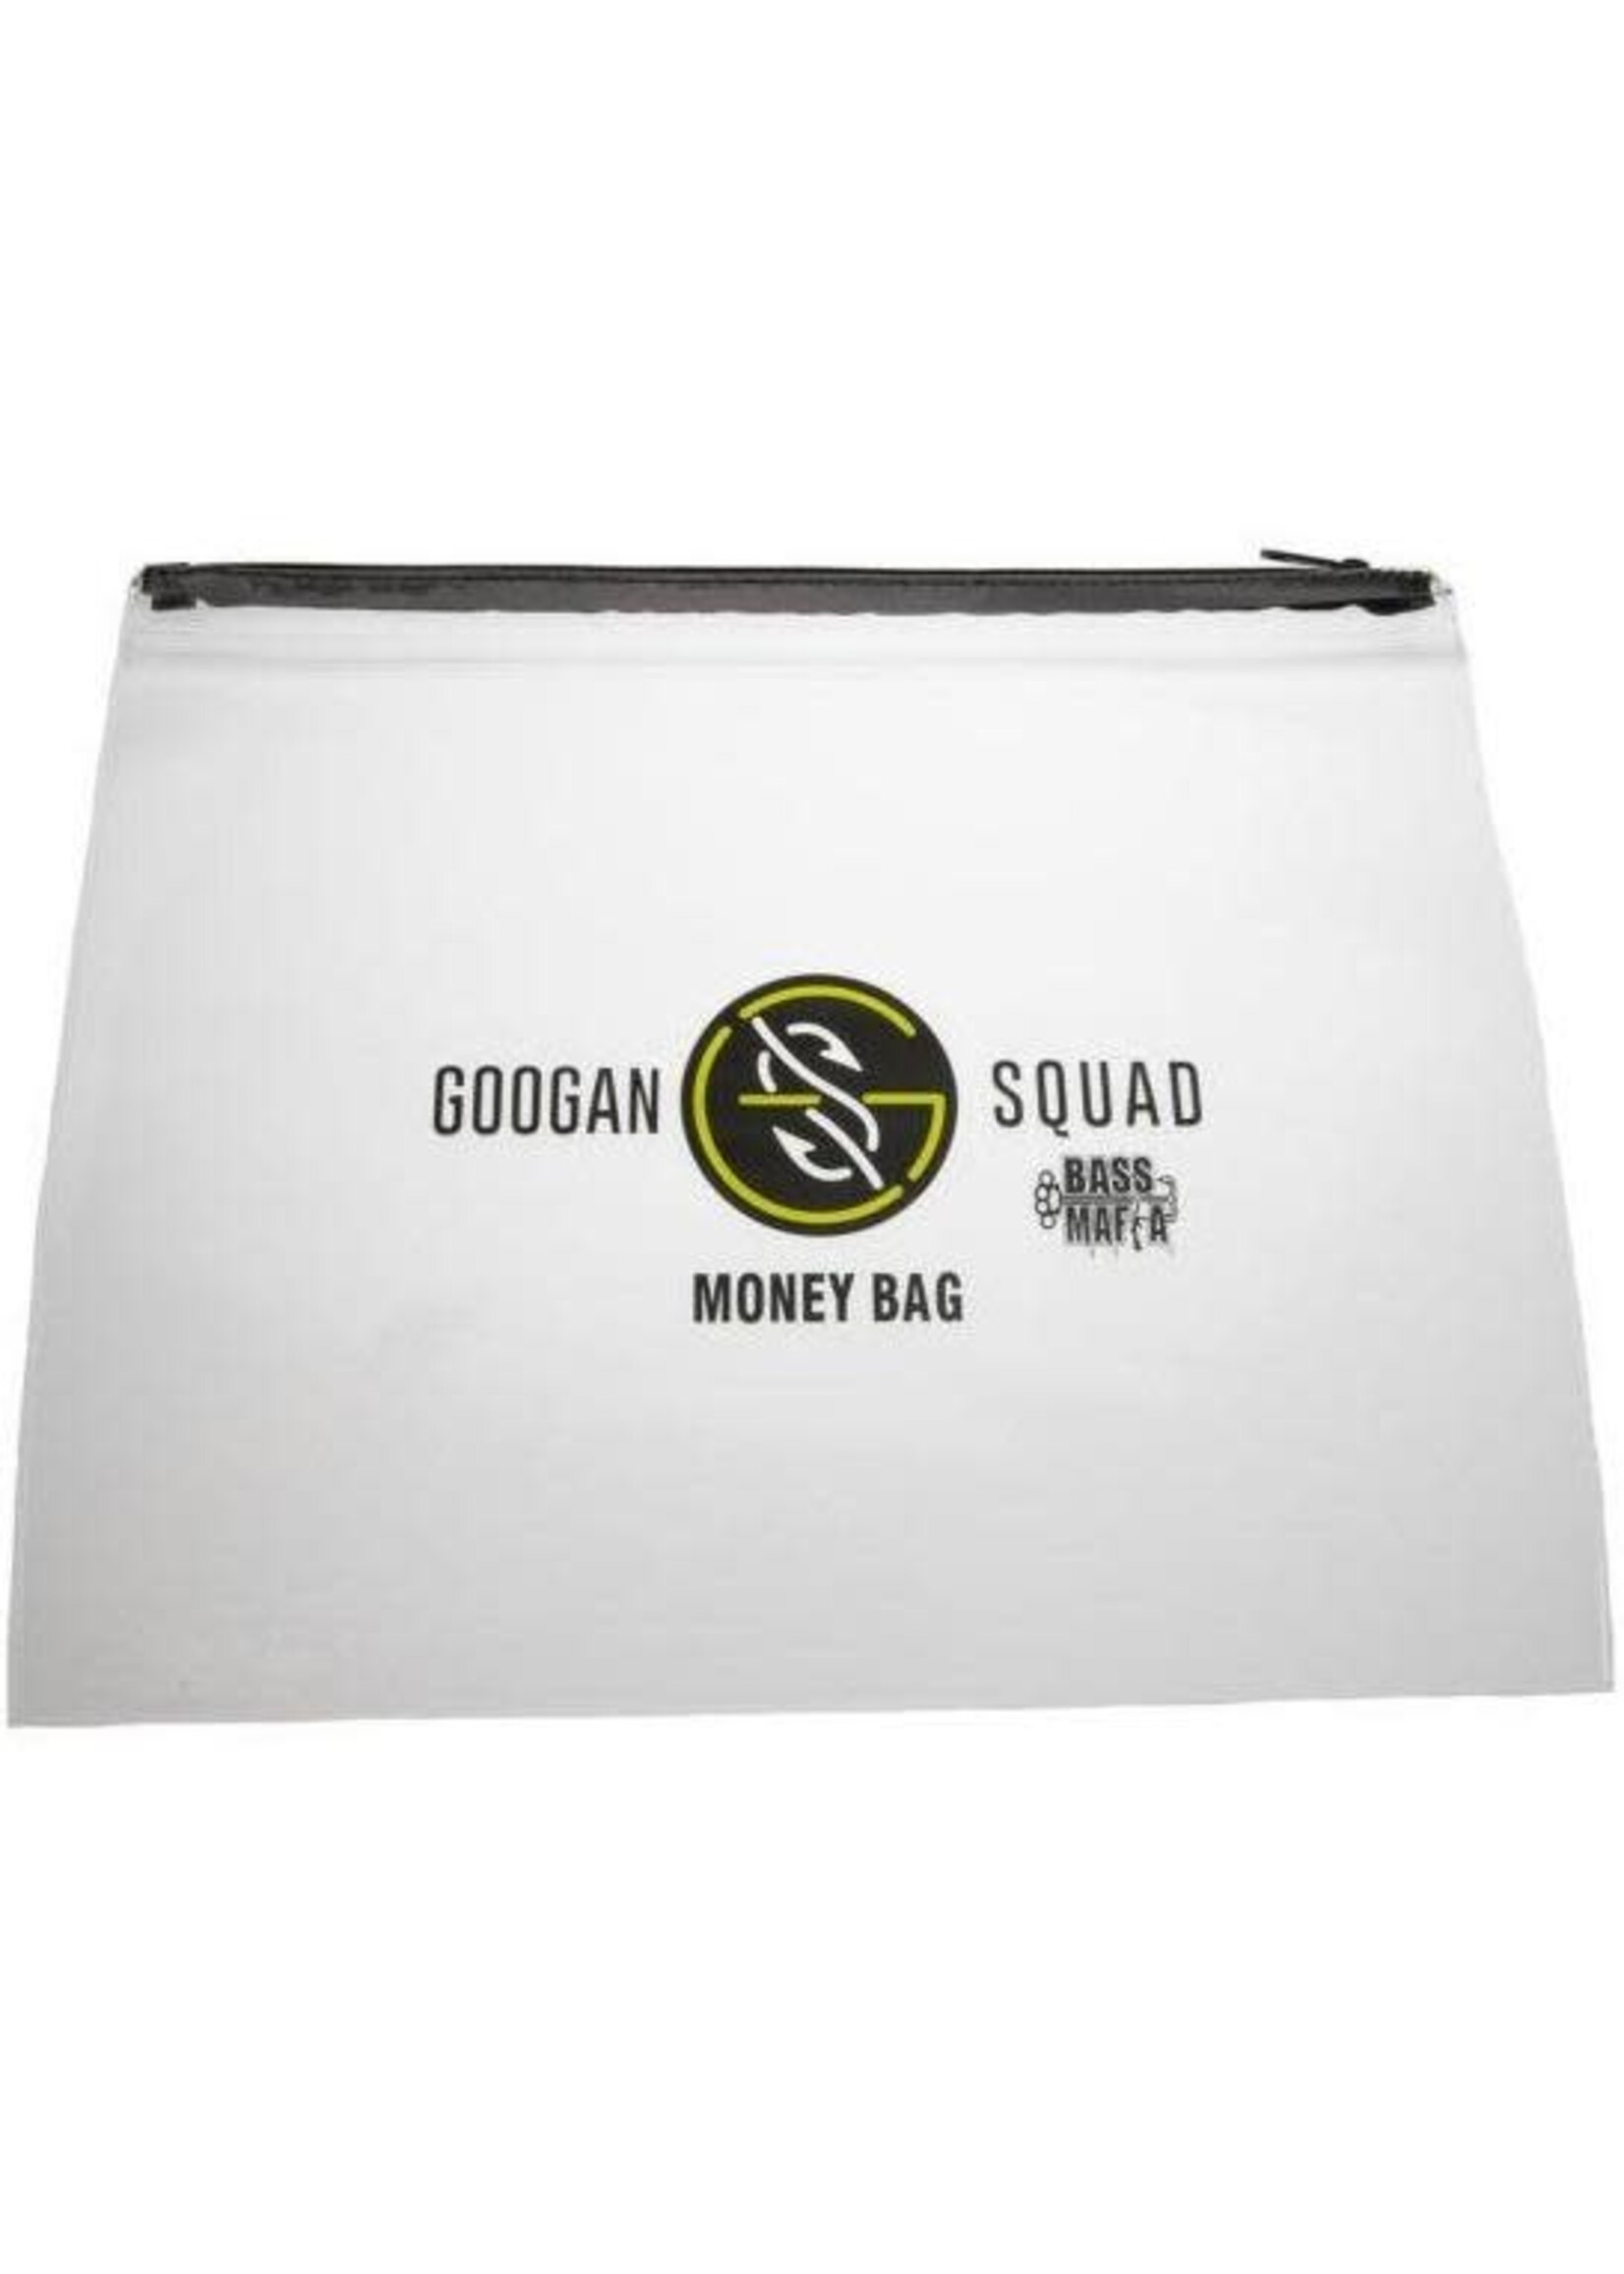 Googan Squad Bass Mafia Money Bag - Tackle Shack